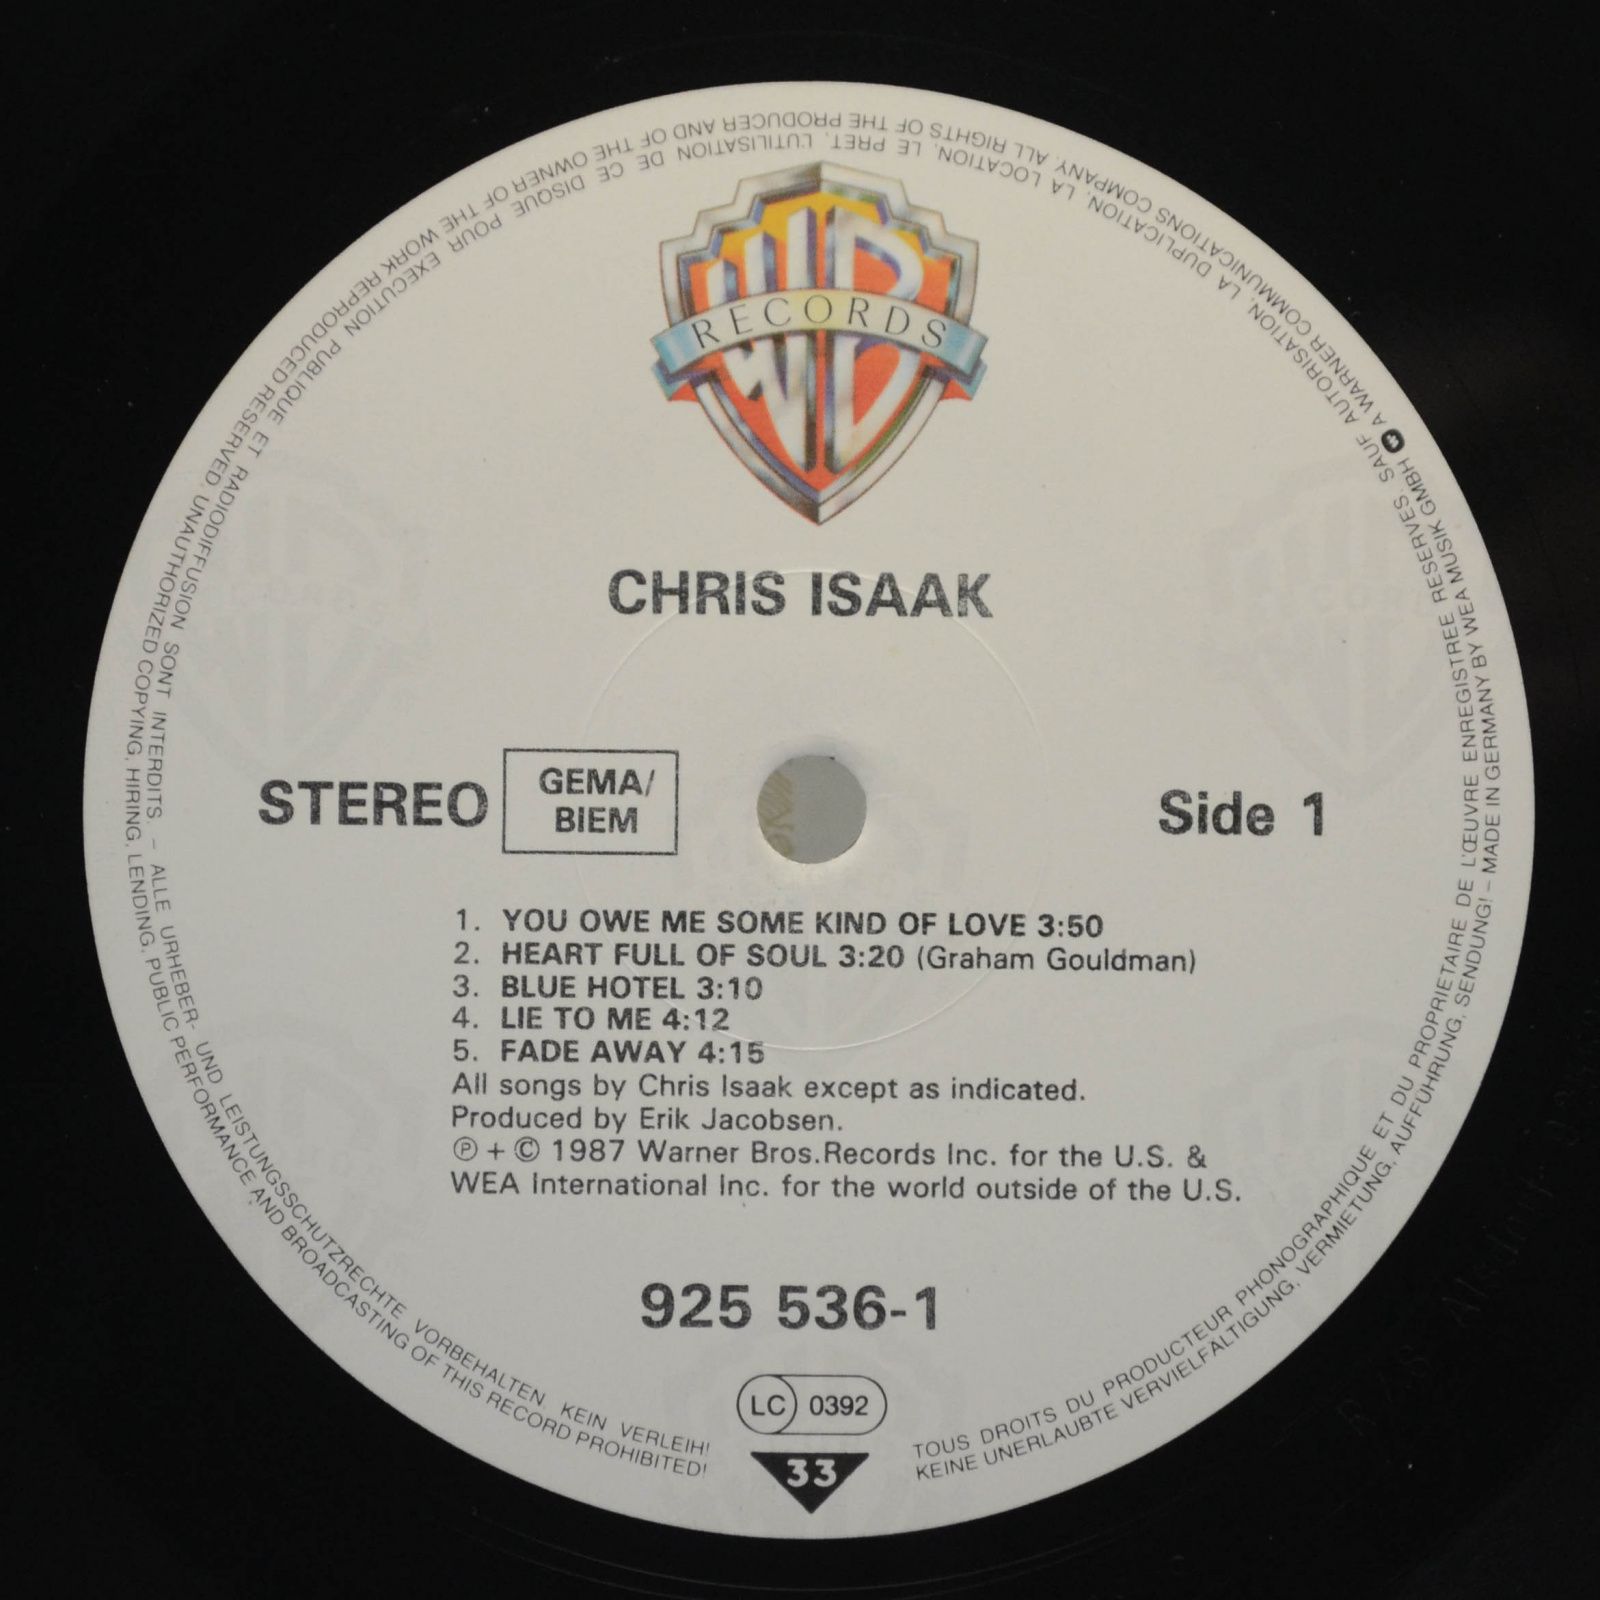 Chris Isaak — Chris Isaak, 1987